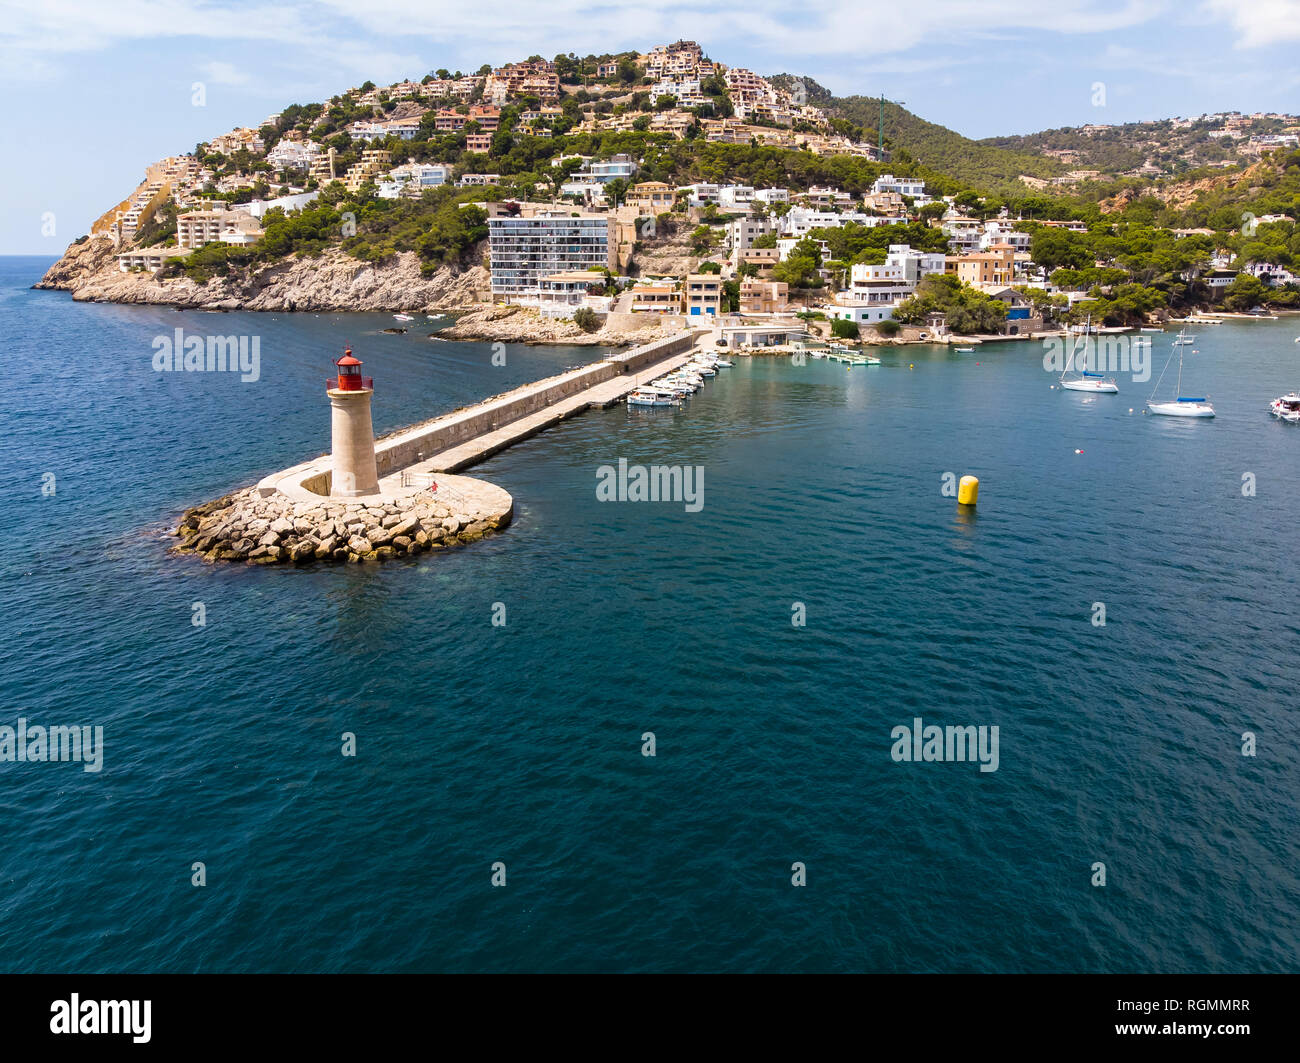 España, Islas Baleares, Mallorca, Región de Andratx, vista aérea del Port d'Andratx, costa y puerto natural con faro Foto de stock